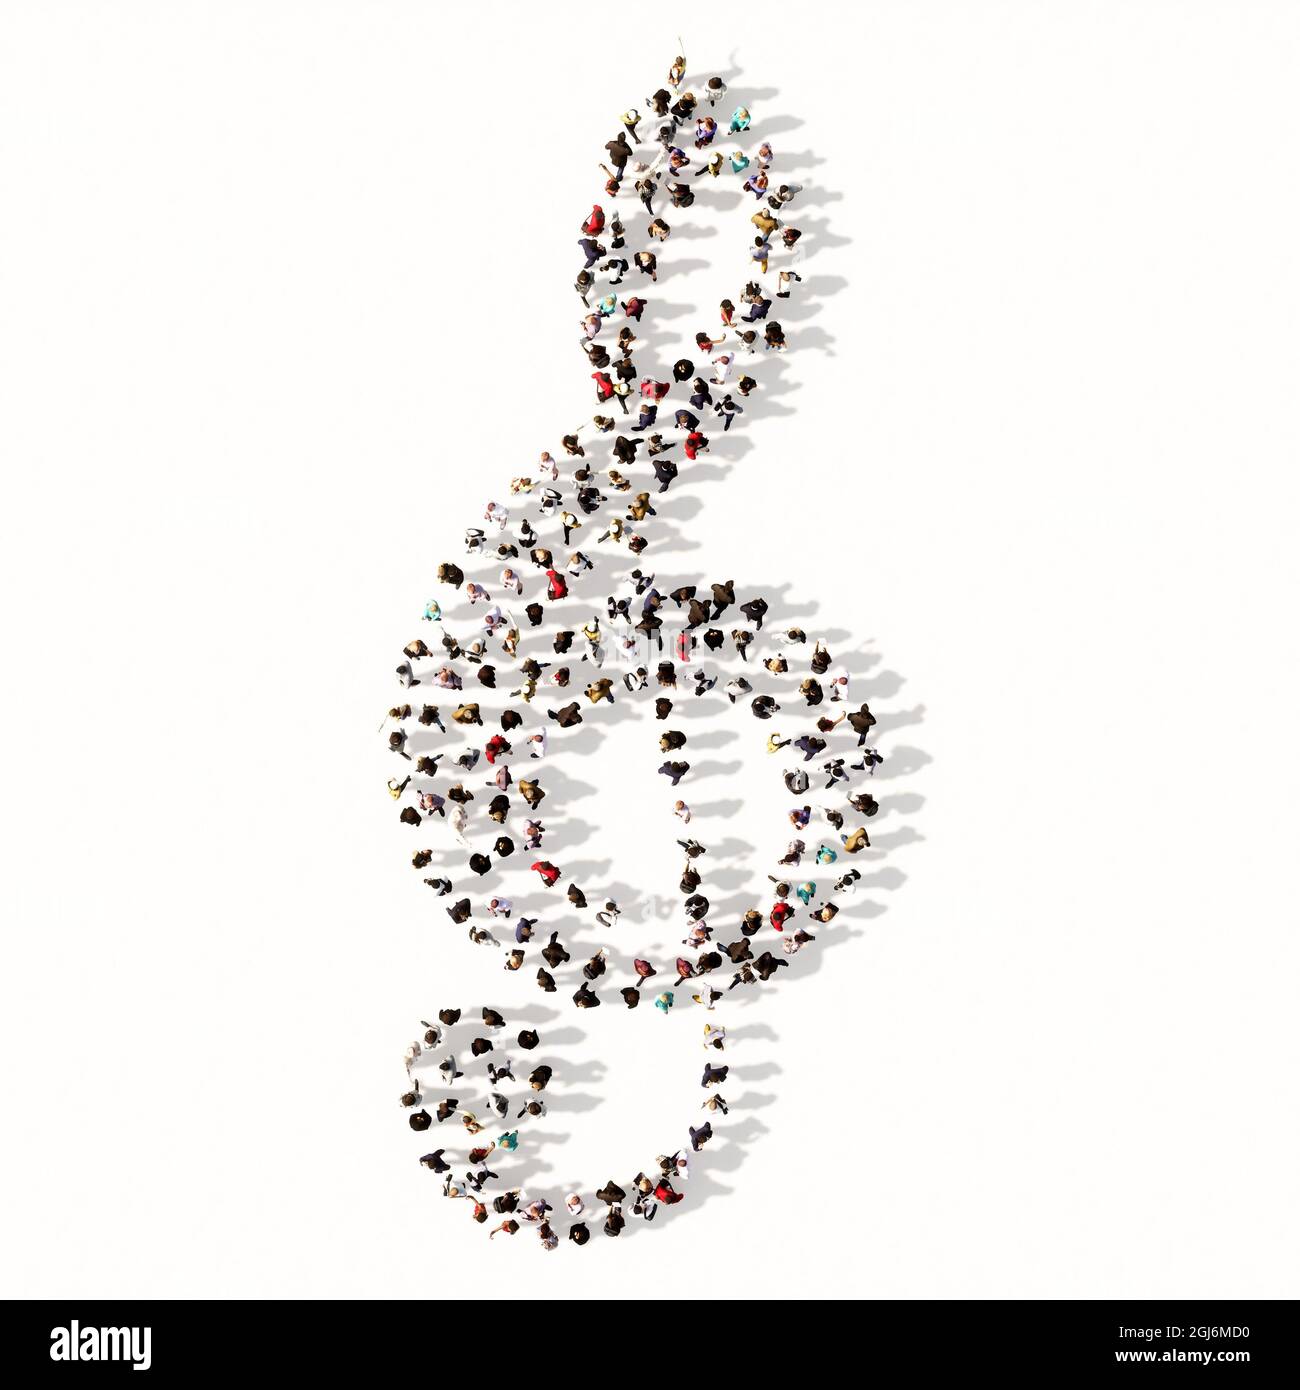 Konzept oder konzeptuelle große Gemeinschaft von Menschen, die das Bild einer musikalischen Note auf weißem Hintergrund bilden. Eine 3d-Illustration Metapher für Musik Stockfoto